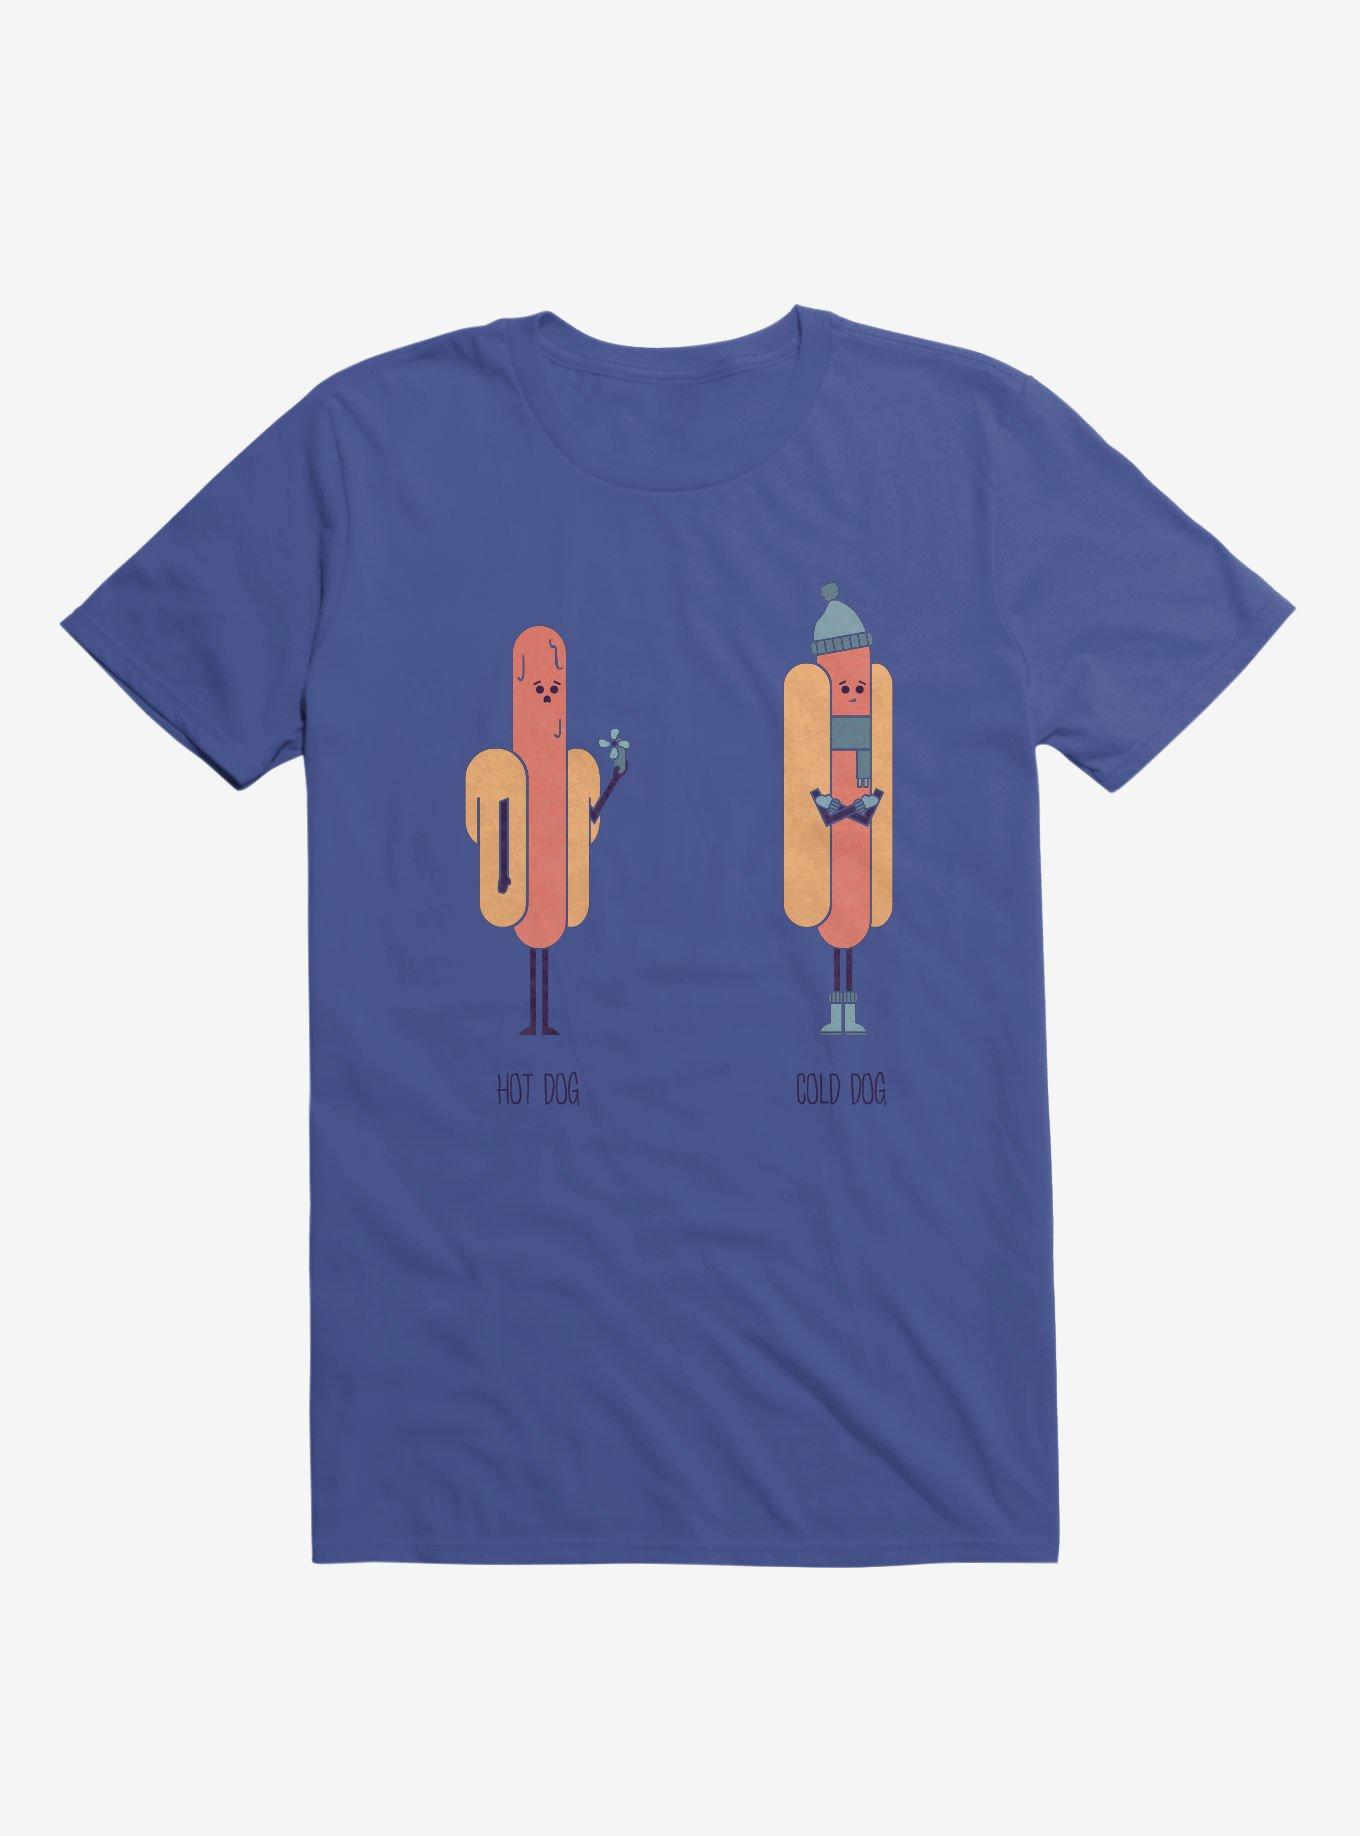 Opposites Hot Dog Cold Dog Royal Blue T-Shirt, ROYAL, hi-res